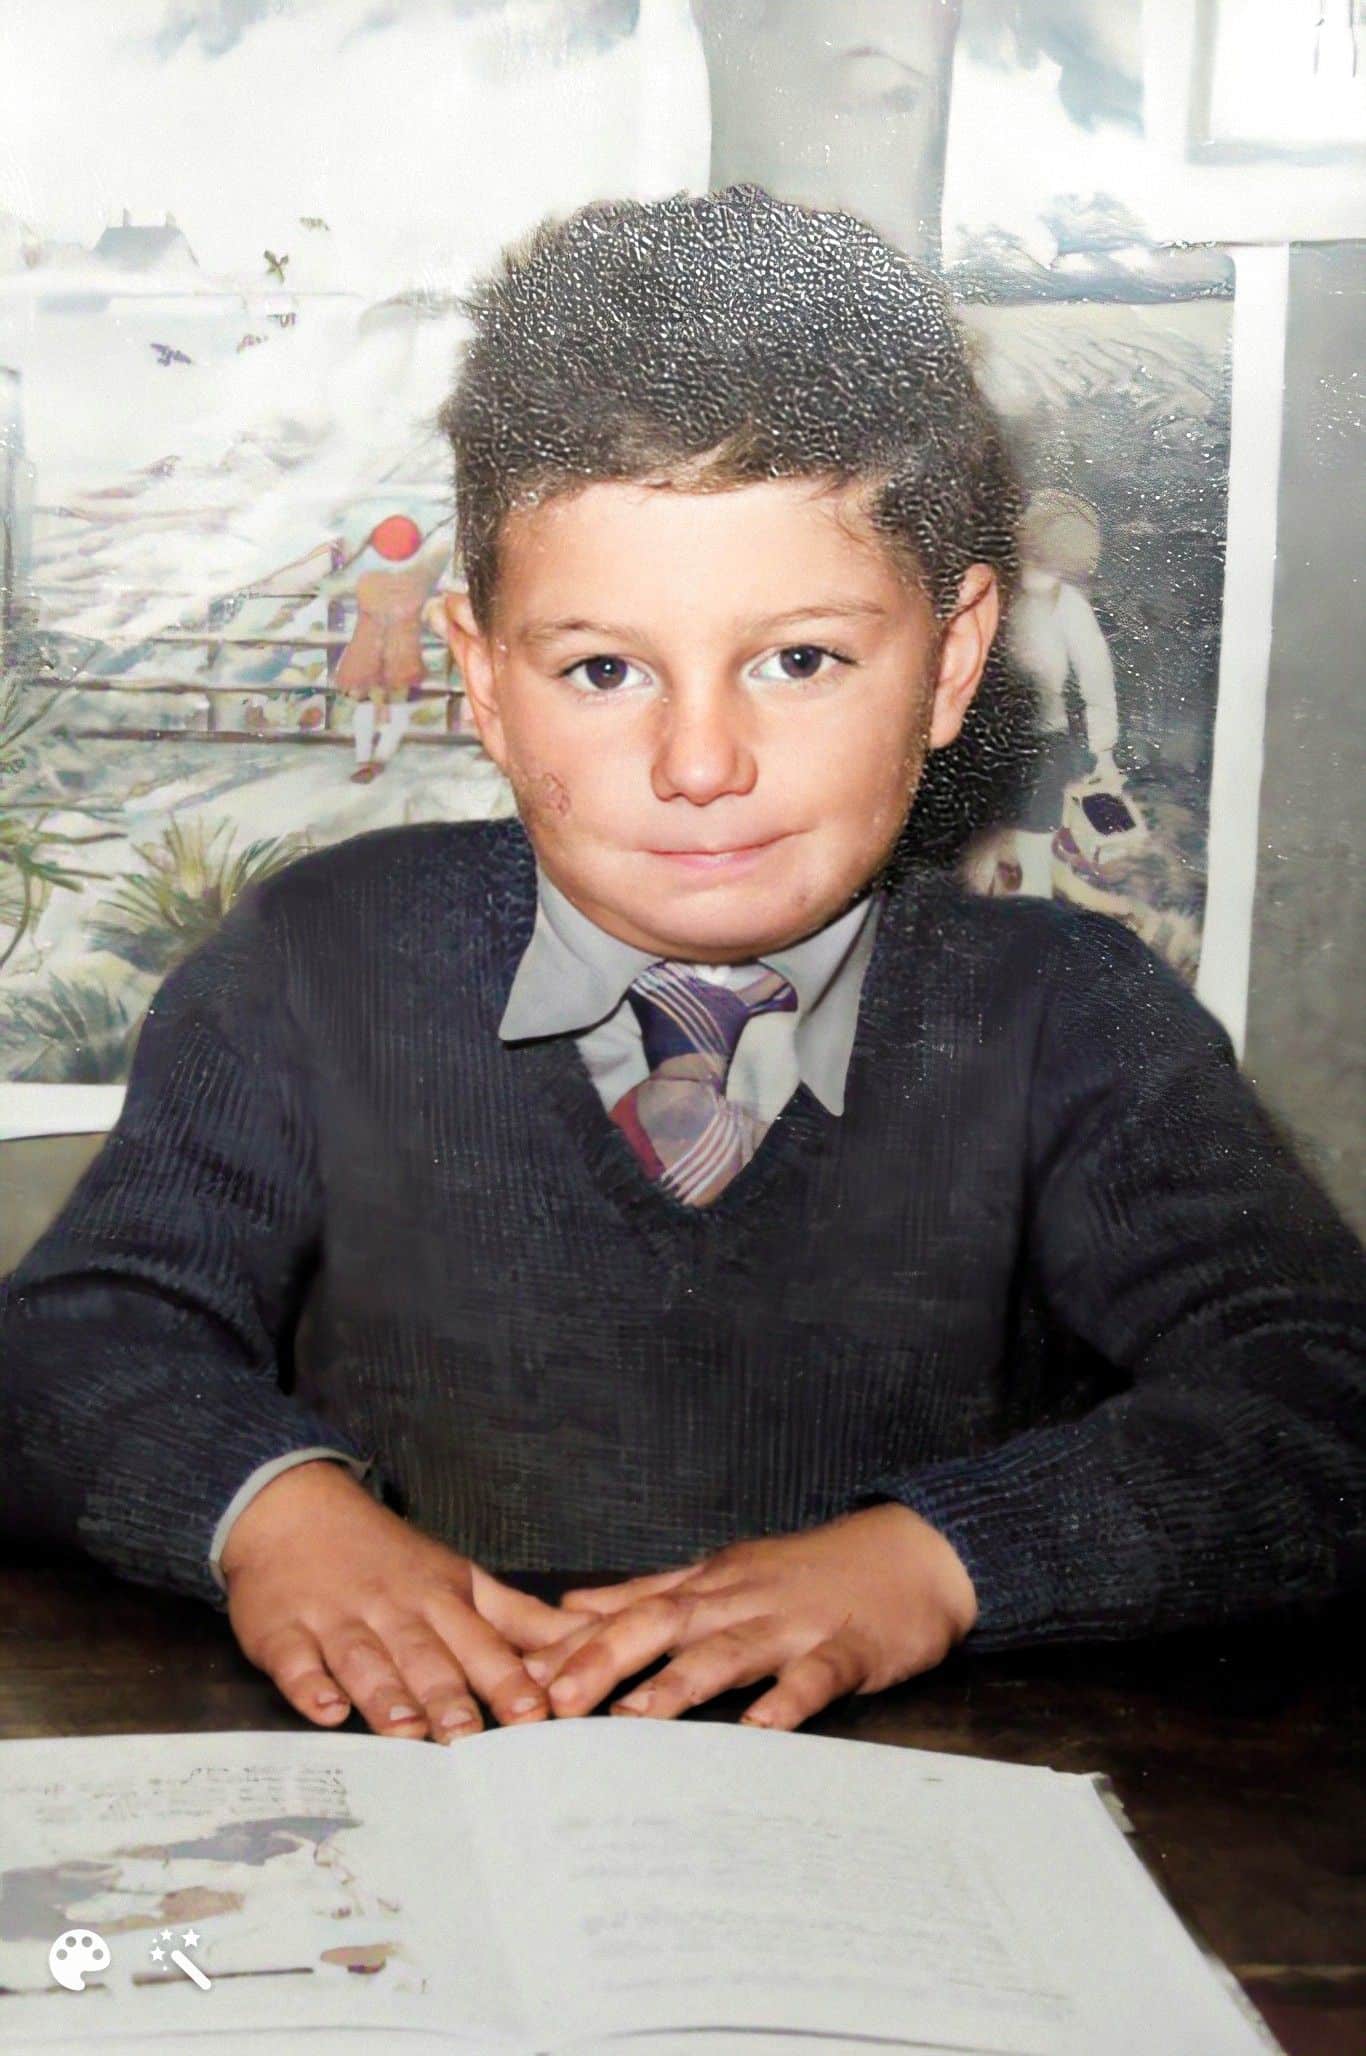 Neil als Kind. Foto verbessert und koloriert mit MyHeritage